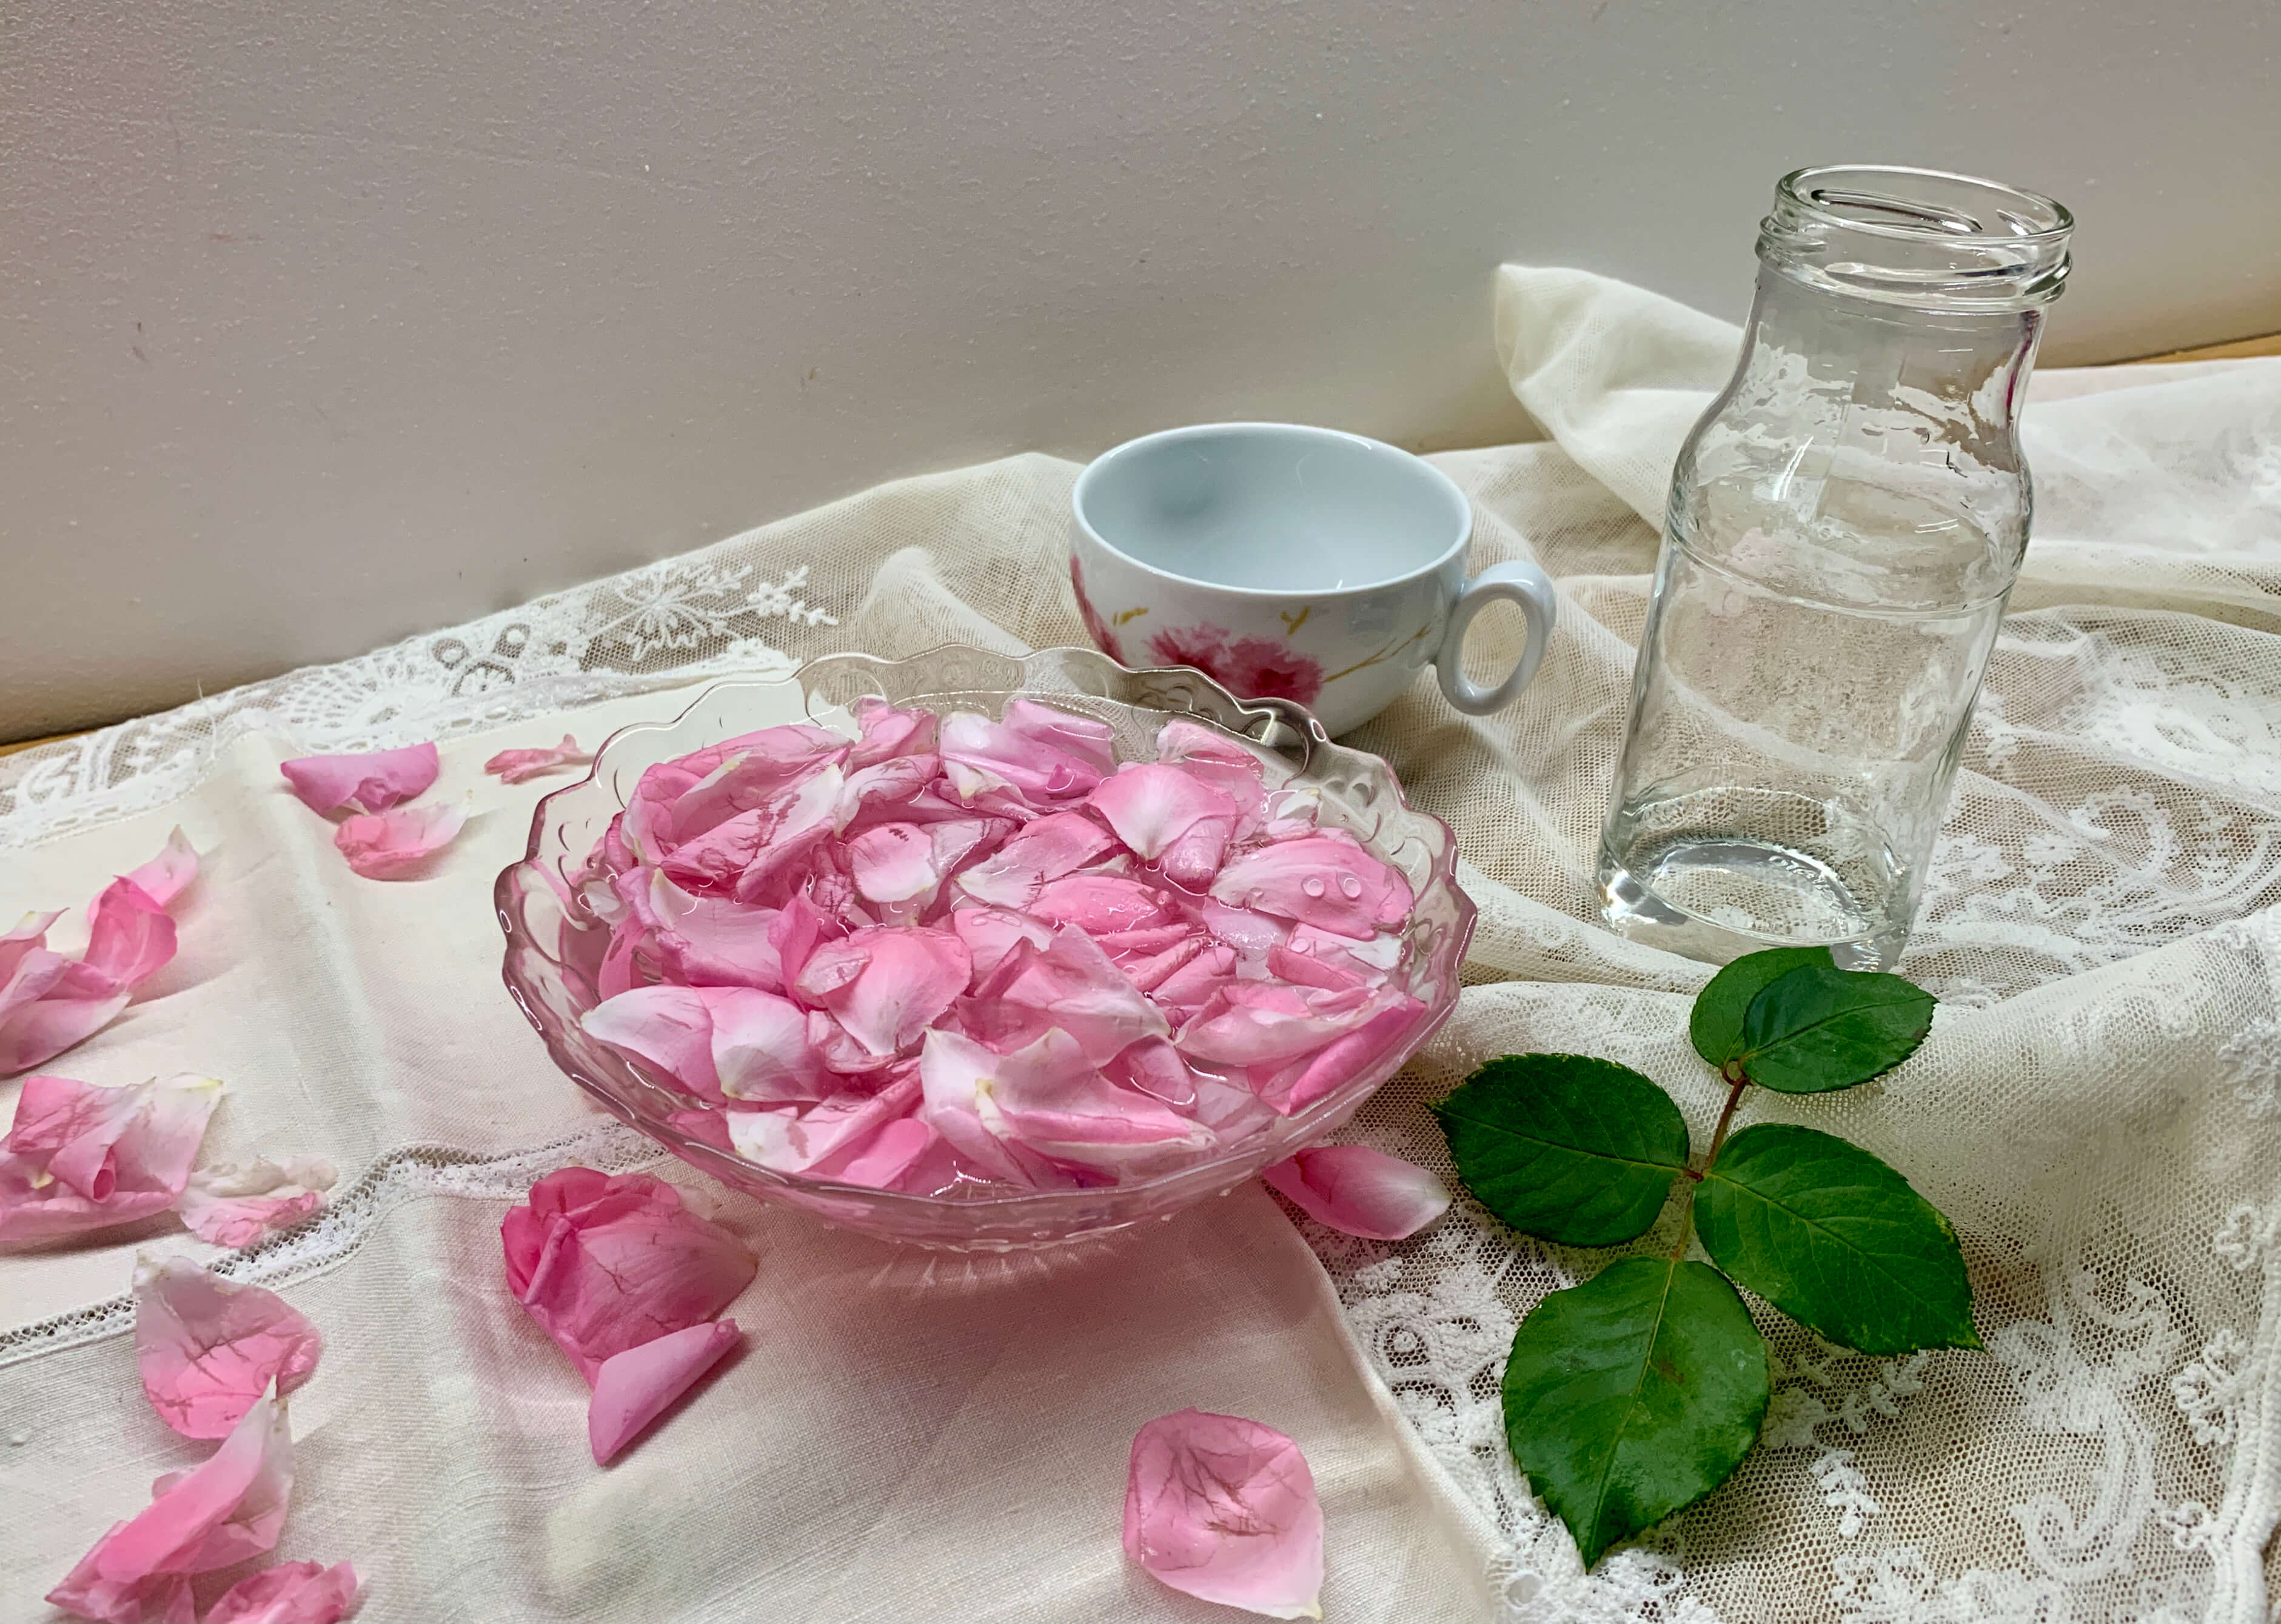 Petali di rosa dentro una ciotola di vetro con acqua